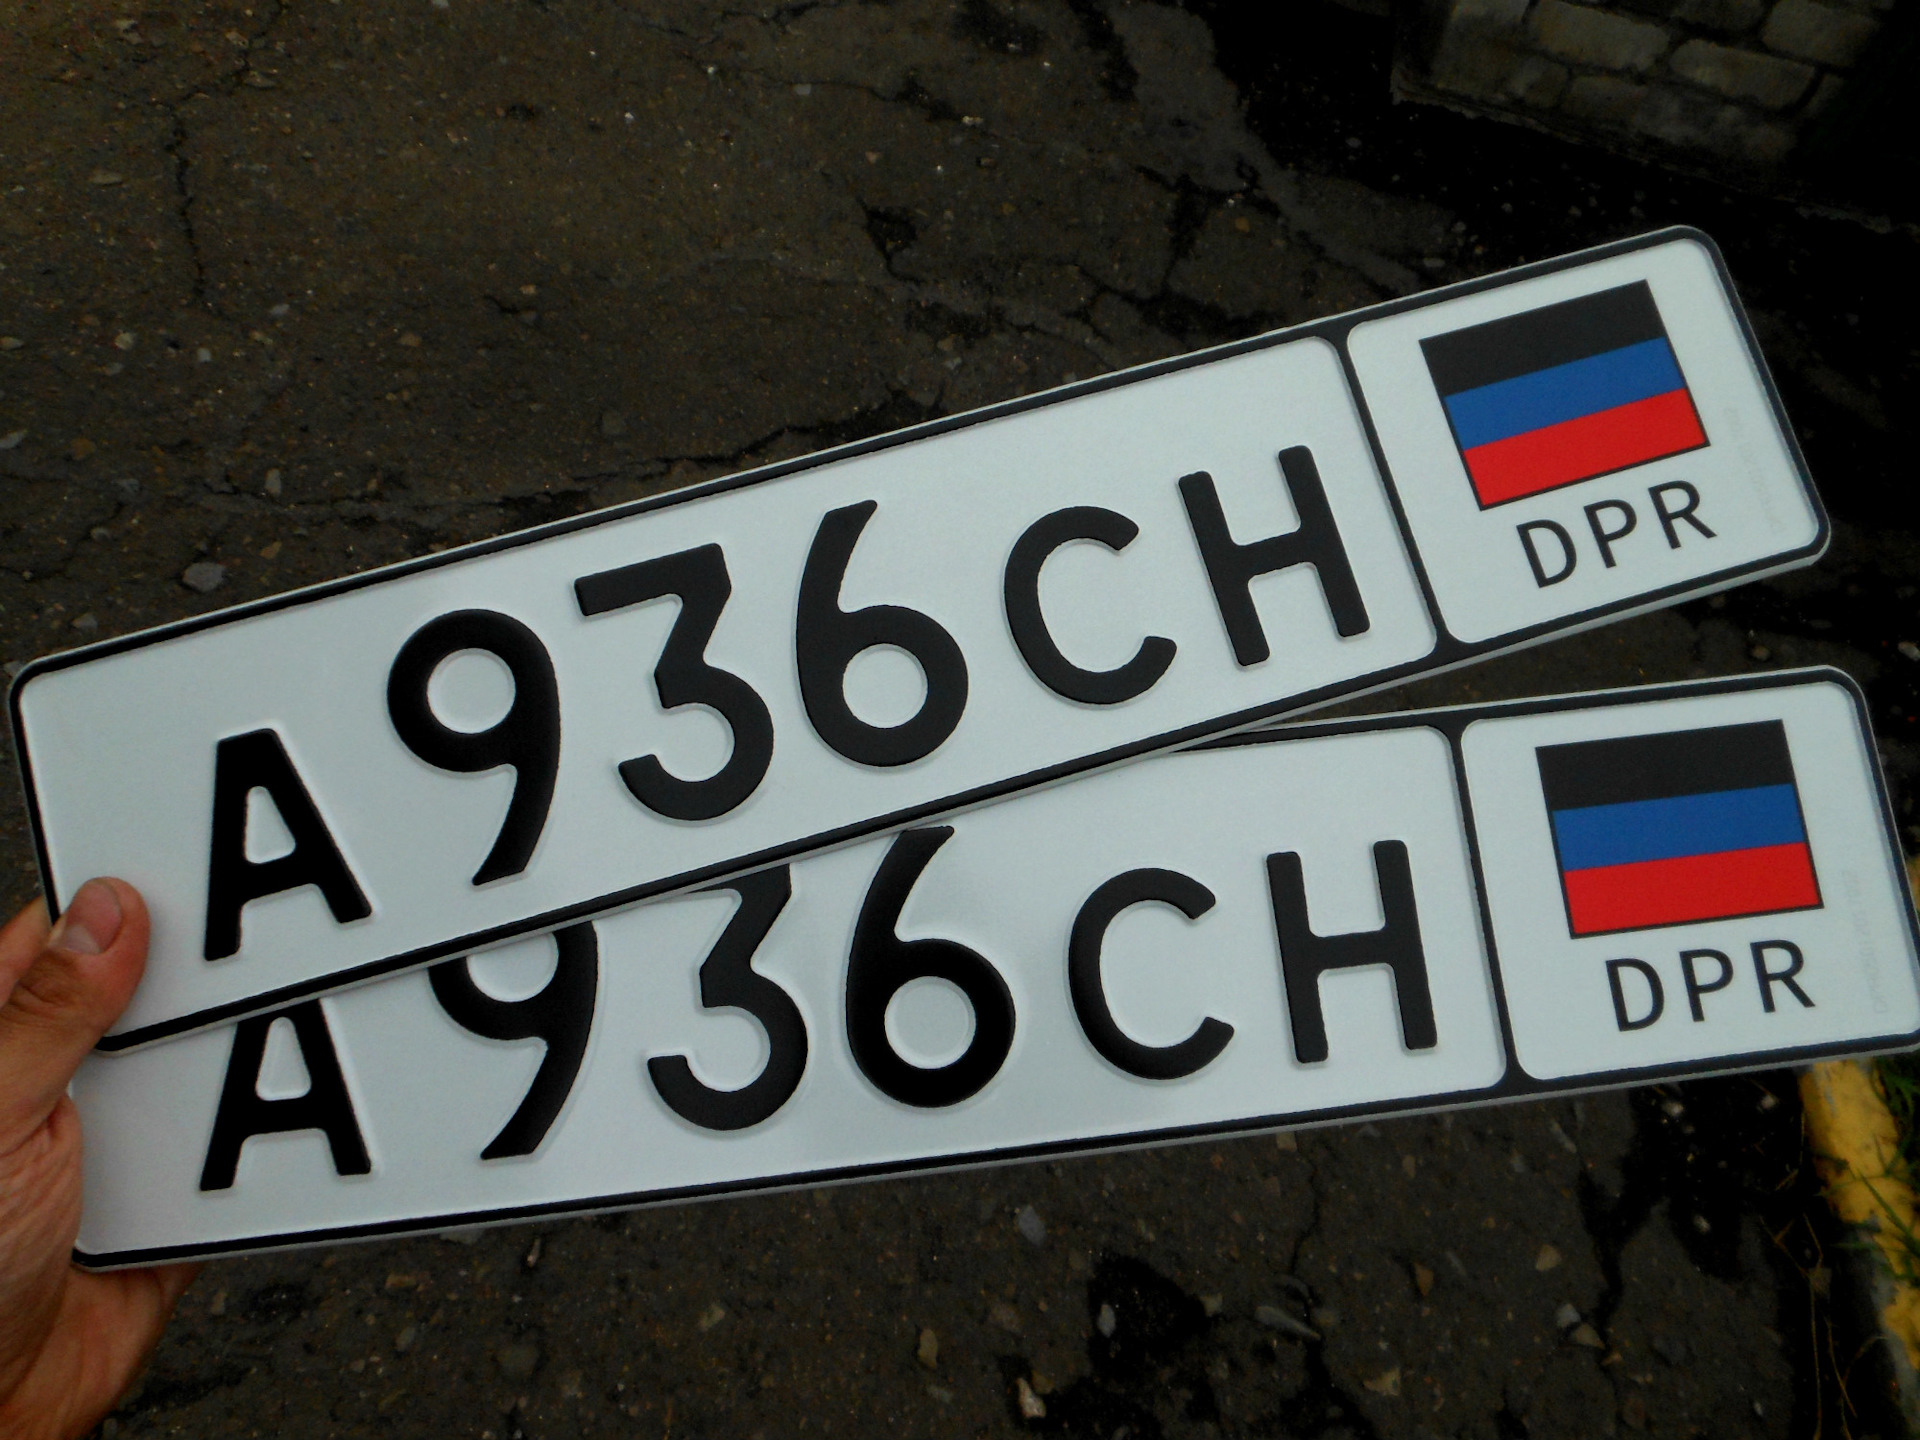 Автомобильные коды украины. Украинские гос номера. Украинские номера автомобилей. Украинские но ера машин. Украинские номерные знаки.